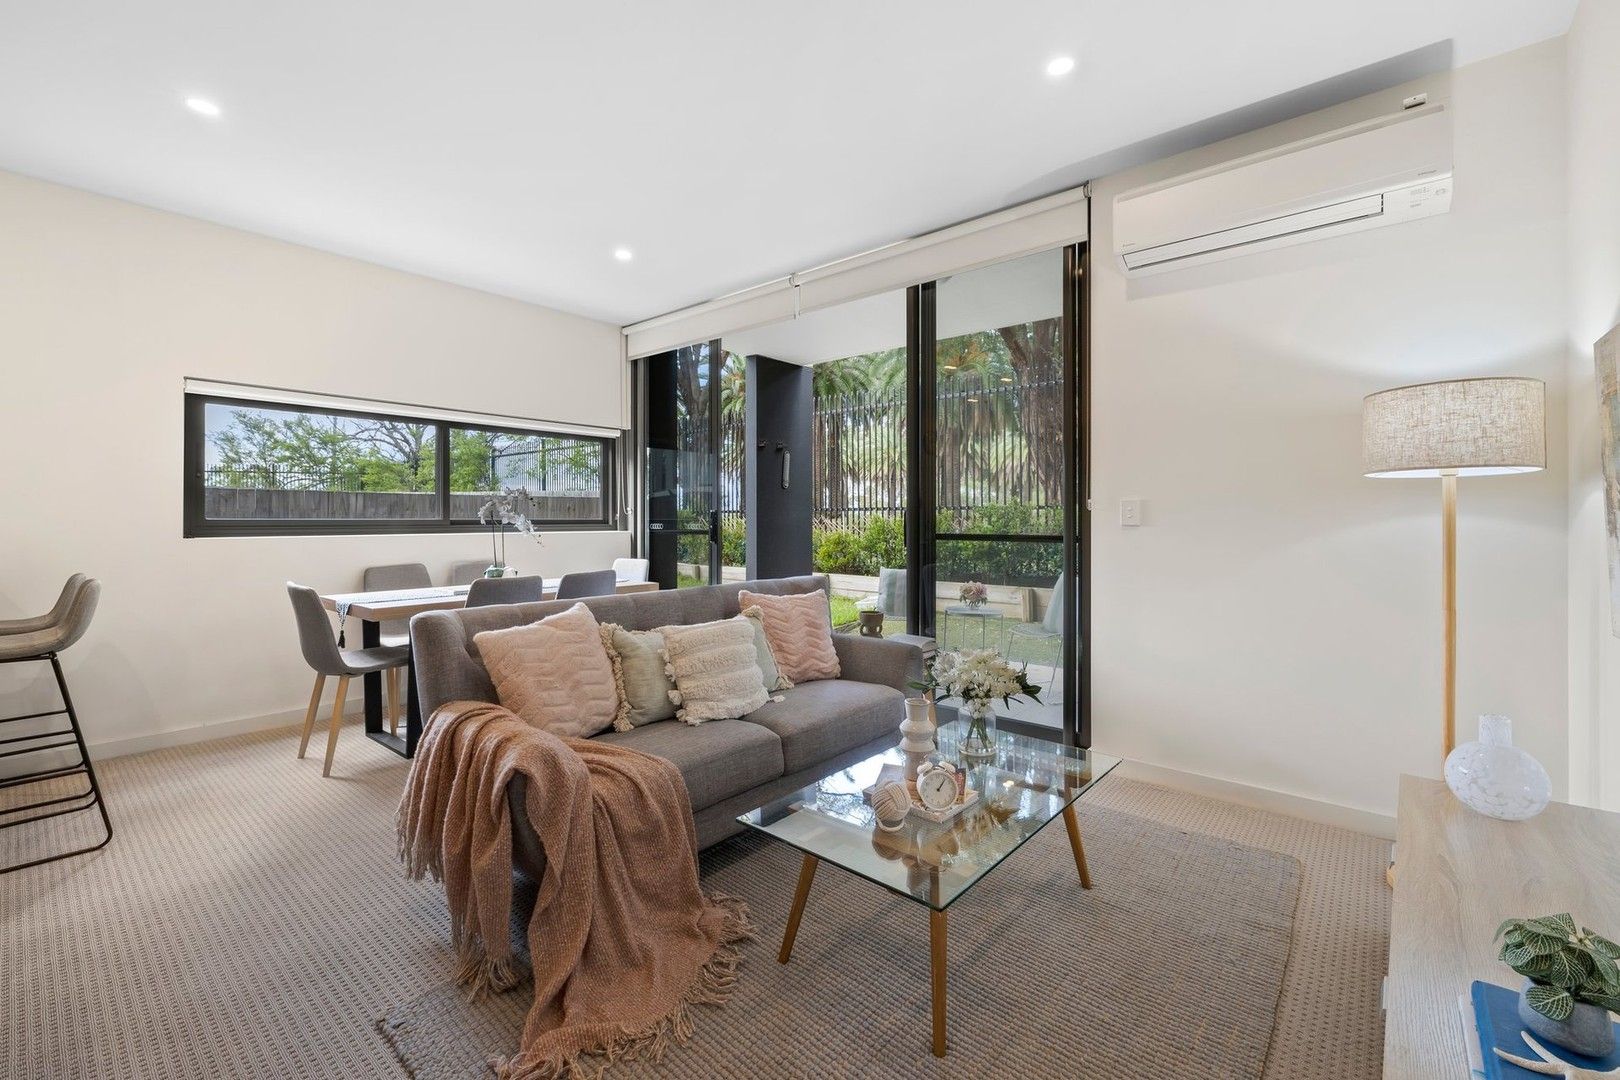 2 bedrooms Villa in CG07/17 Hanna Street POTTS HILL NSW, 2143